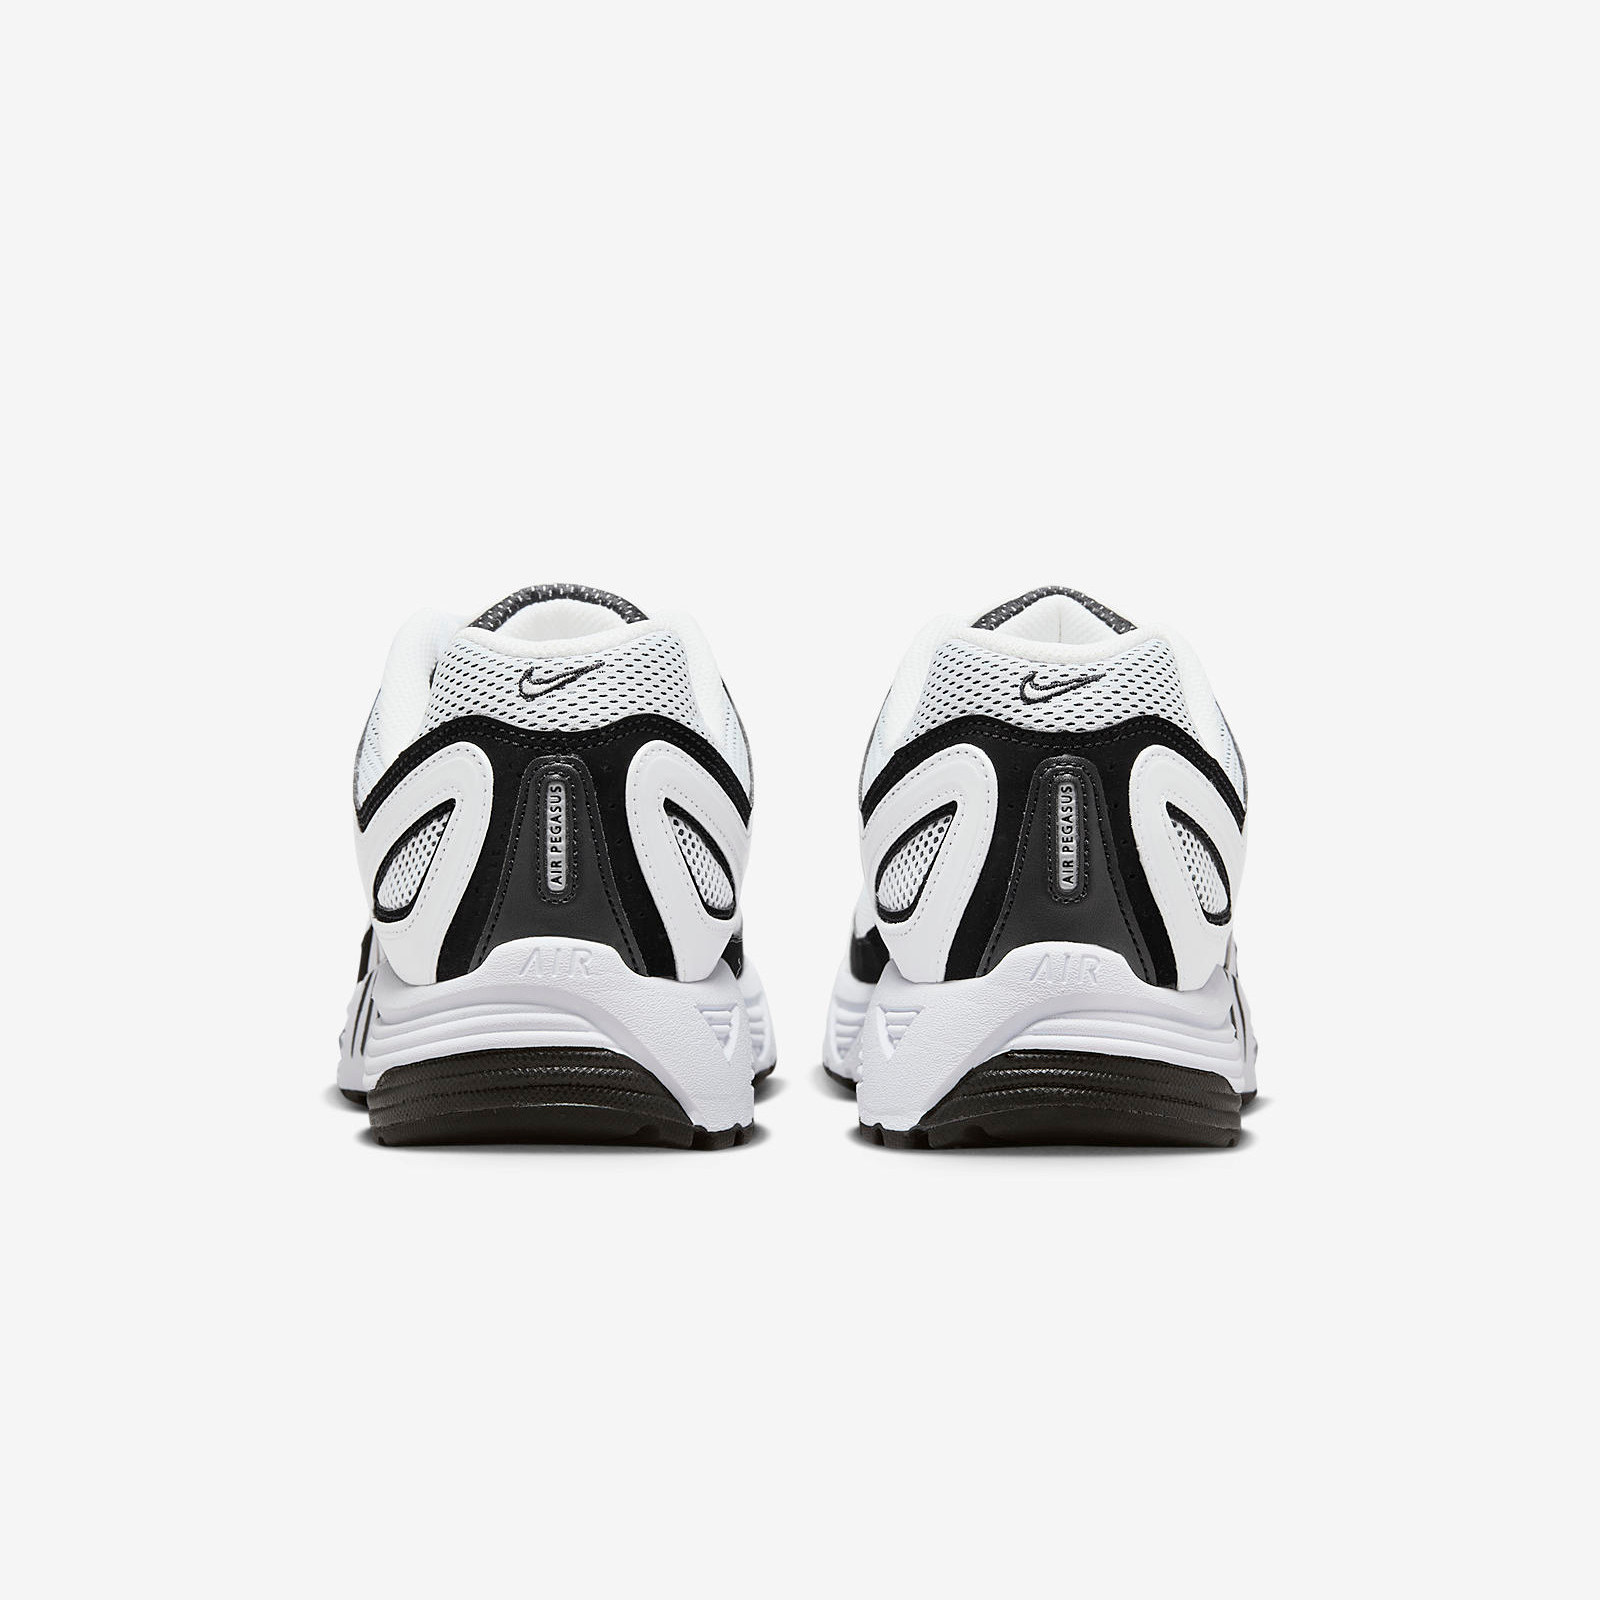 Nike Air Peg 2K5
White / Black